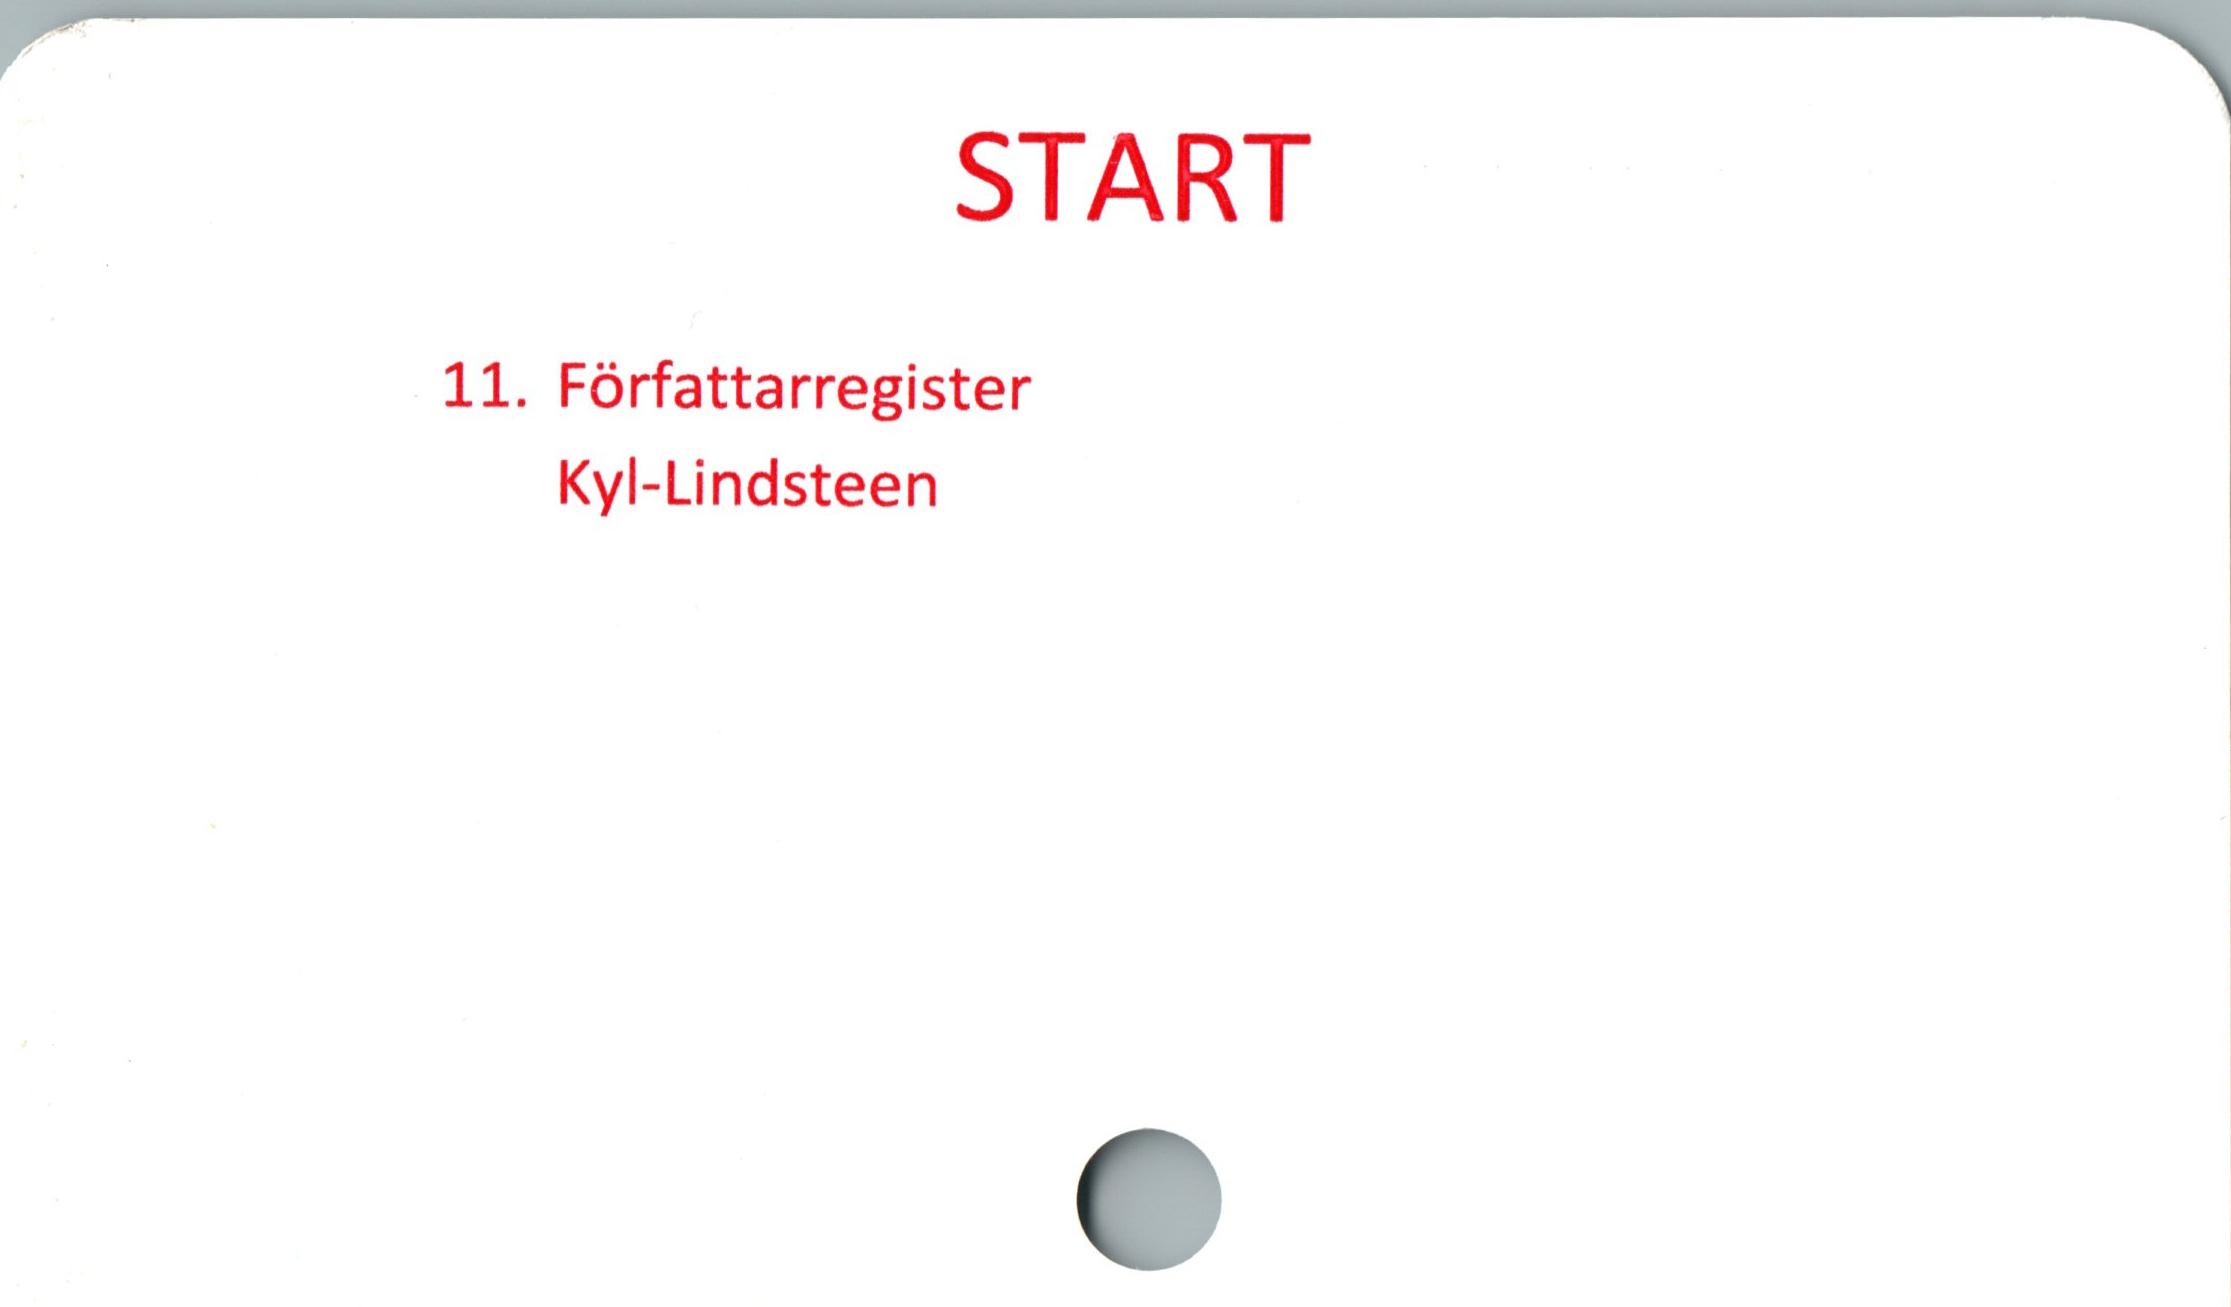  ﻿START

11. Författarregister
Kyl-Lindsteen